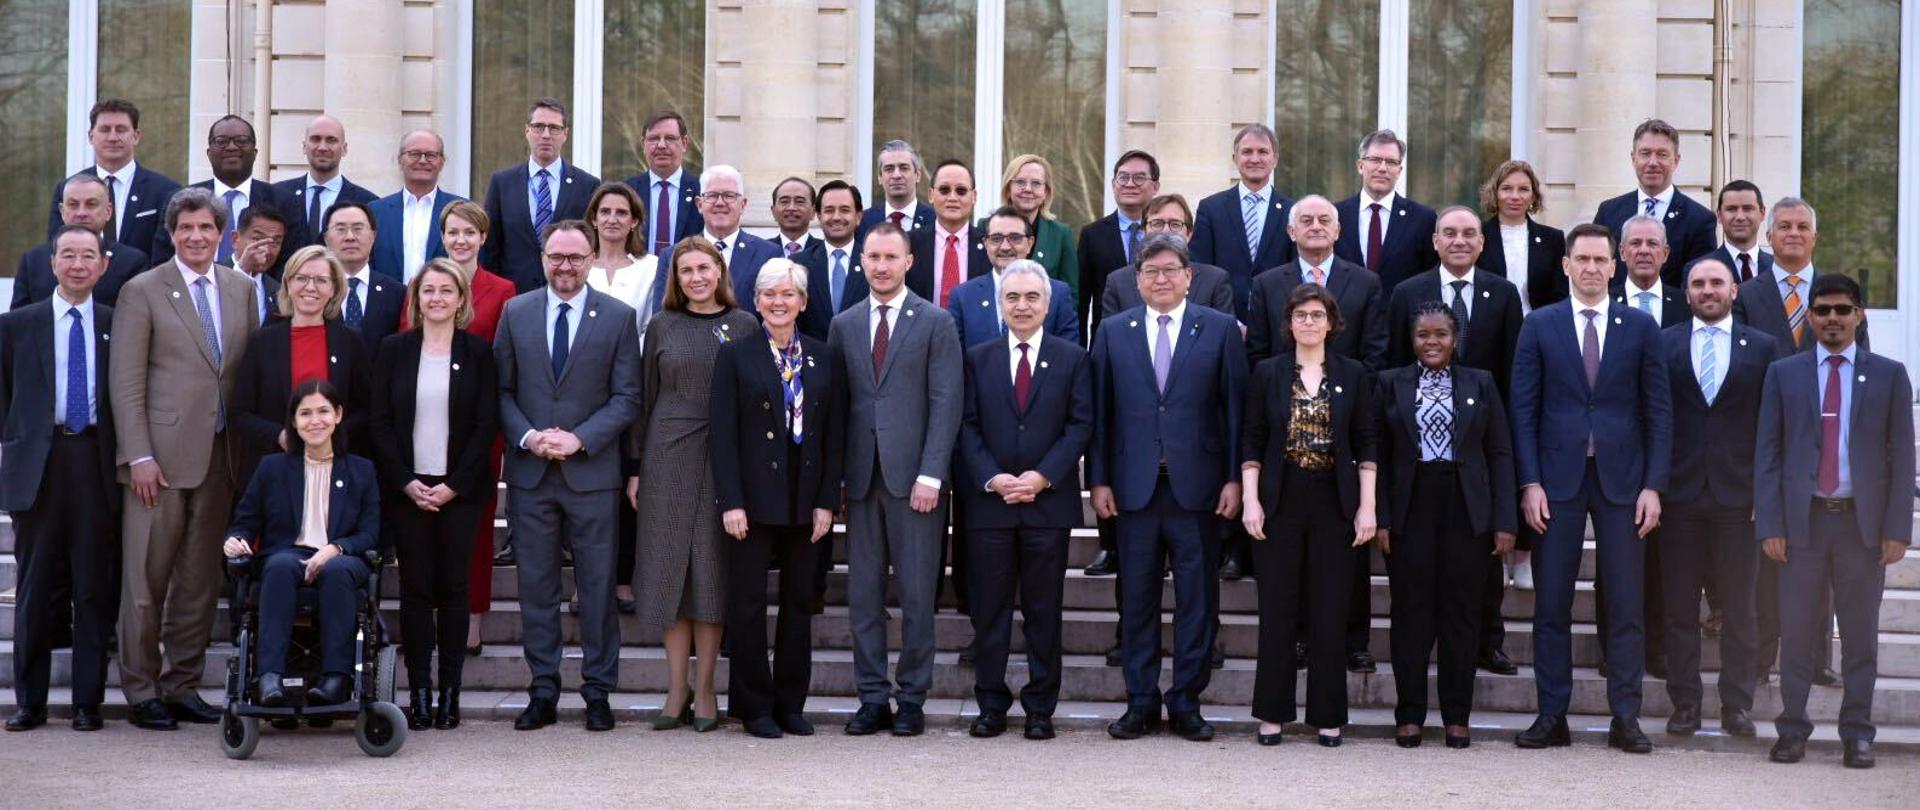 Zdjęcie grupowe ministrów obecnych drugiego dnia na ministerialnym spotkaniu Międzynarodowej Agencji Energetycznej w Paryżu.